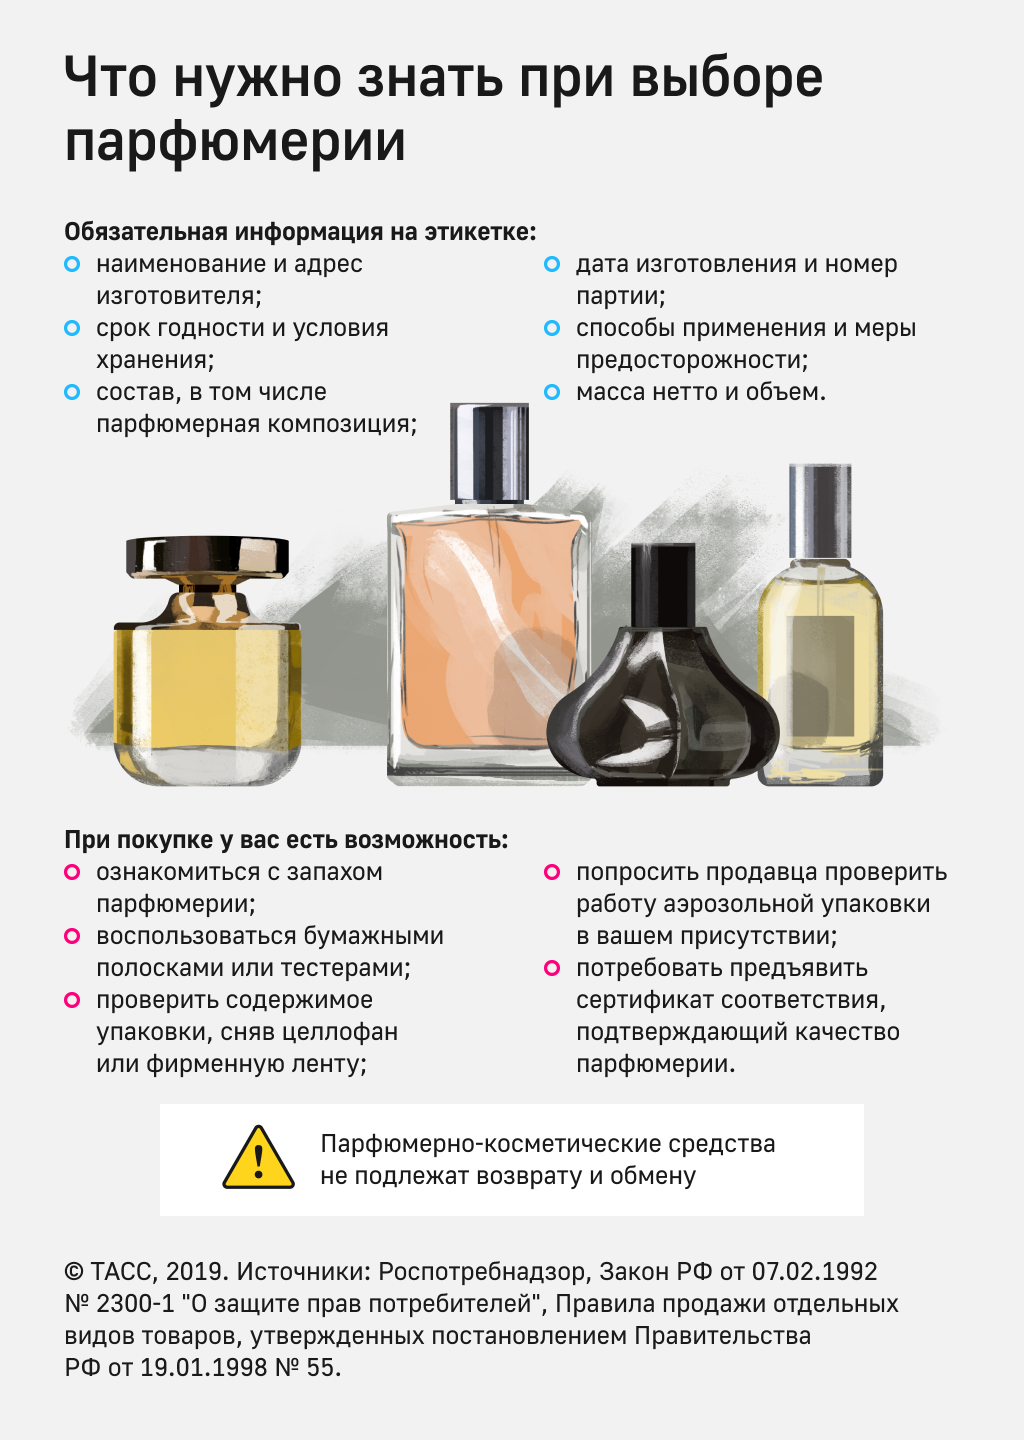 Что нужно знать при выборе парфюмерии.png